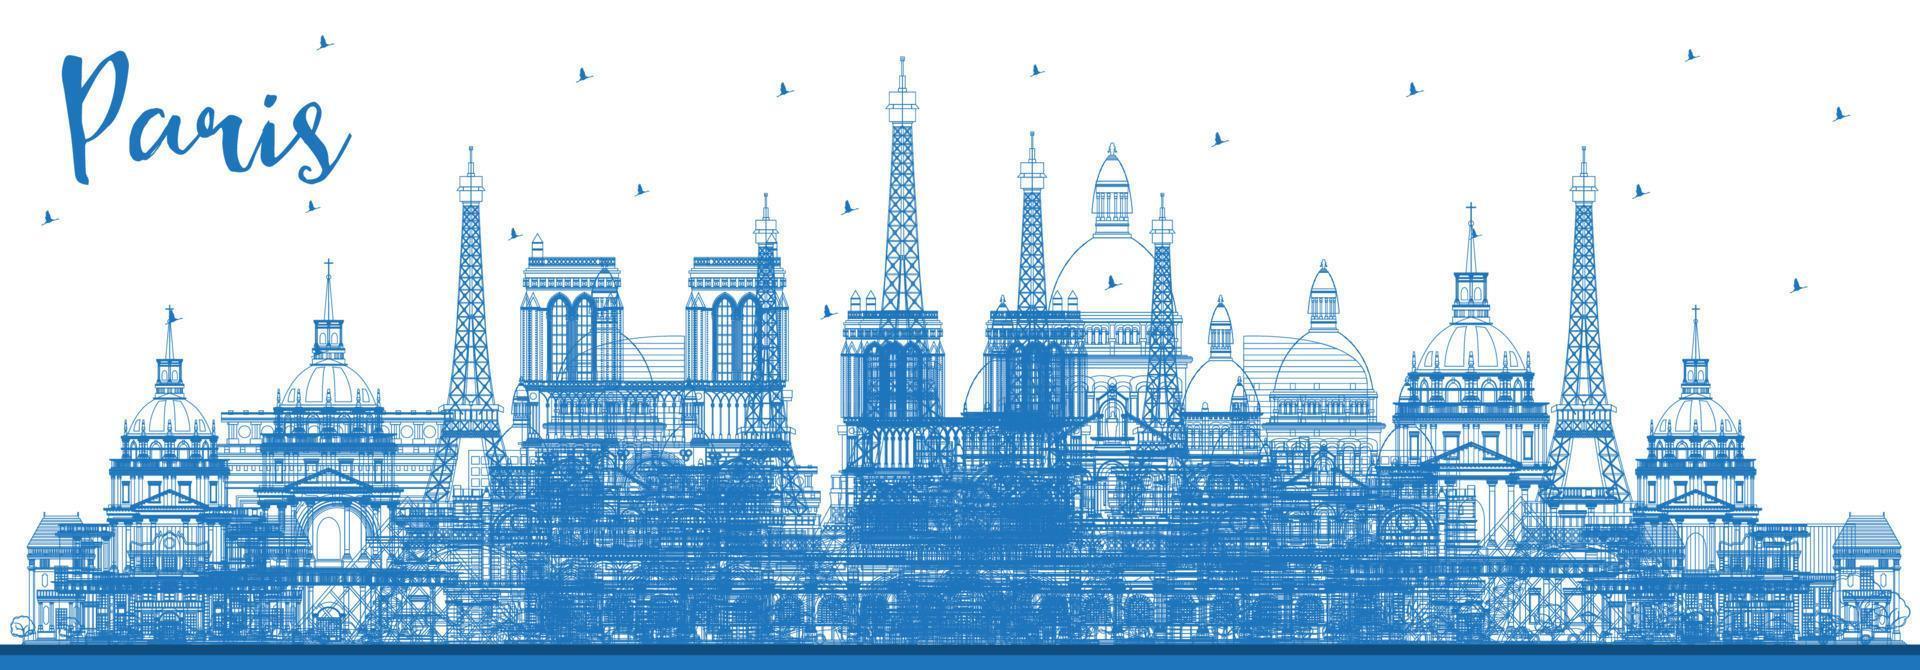 delinear el horizonte de la ciudad de parís francia con edificios azules. vector